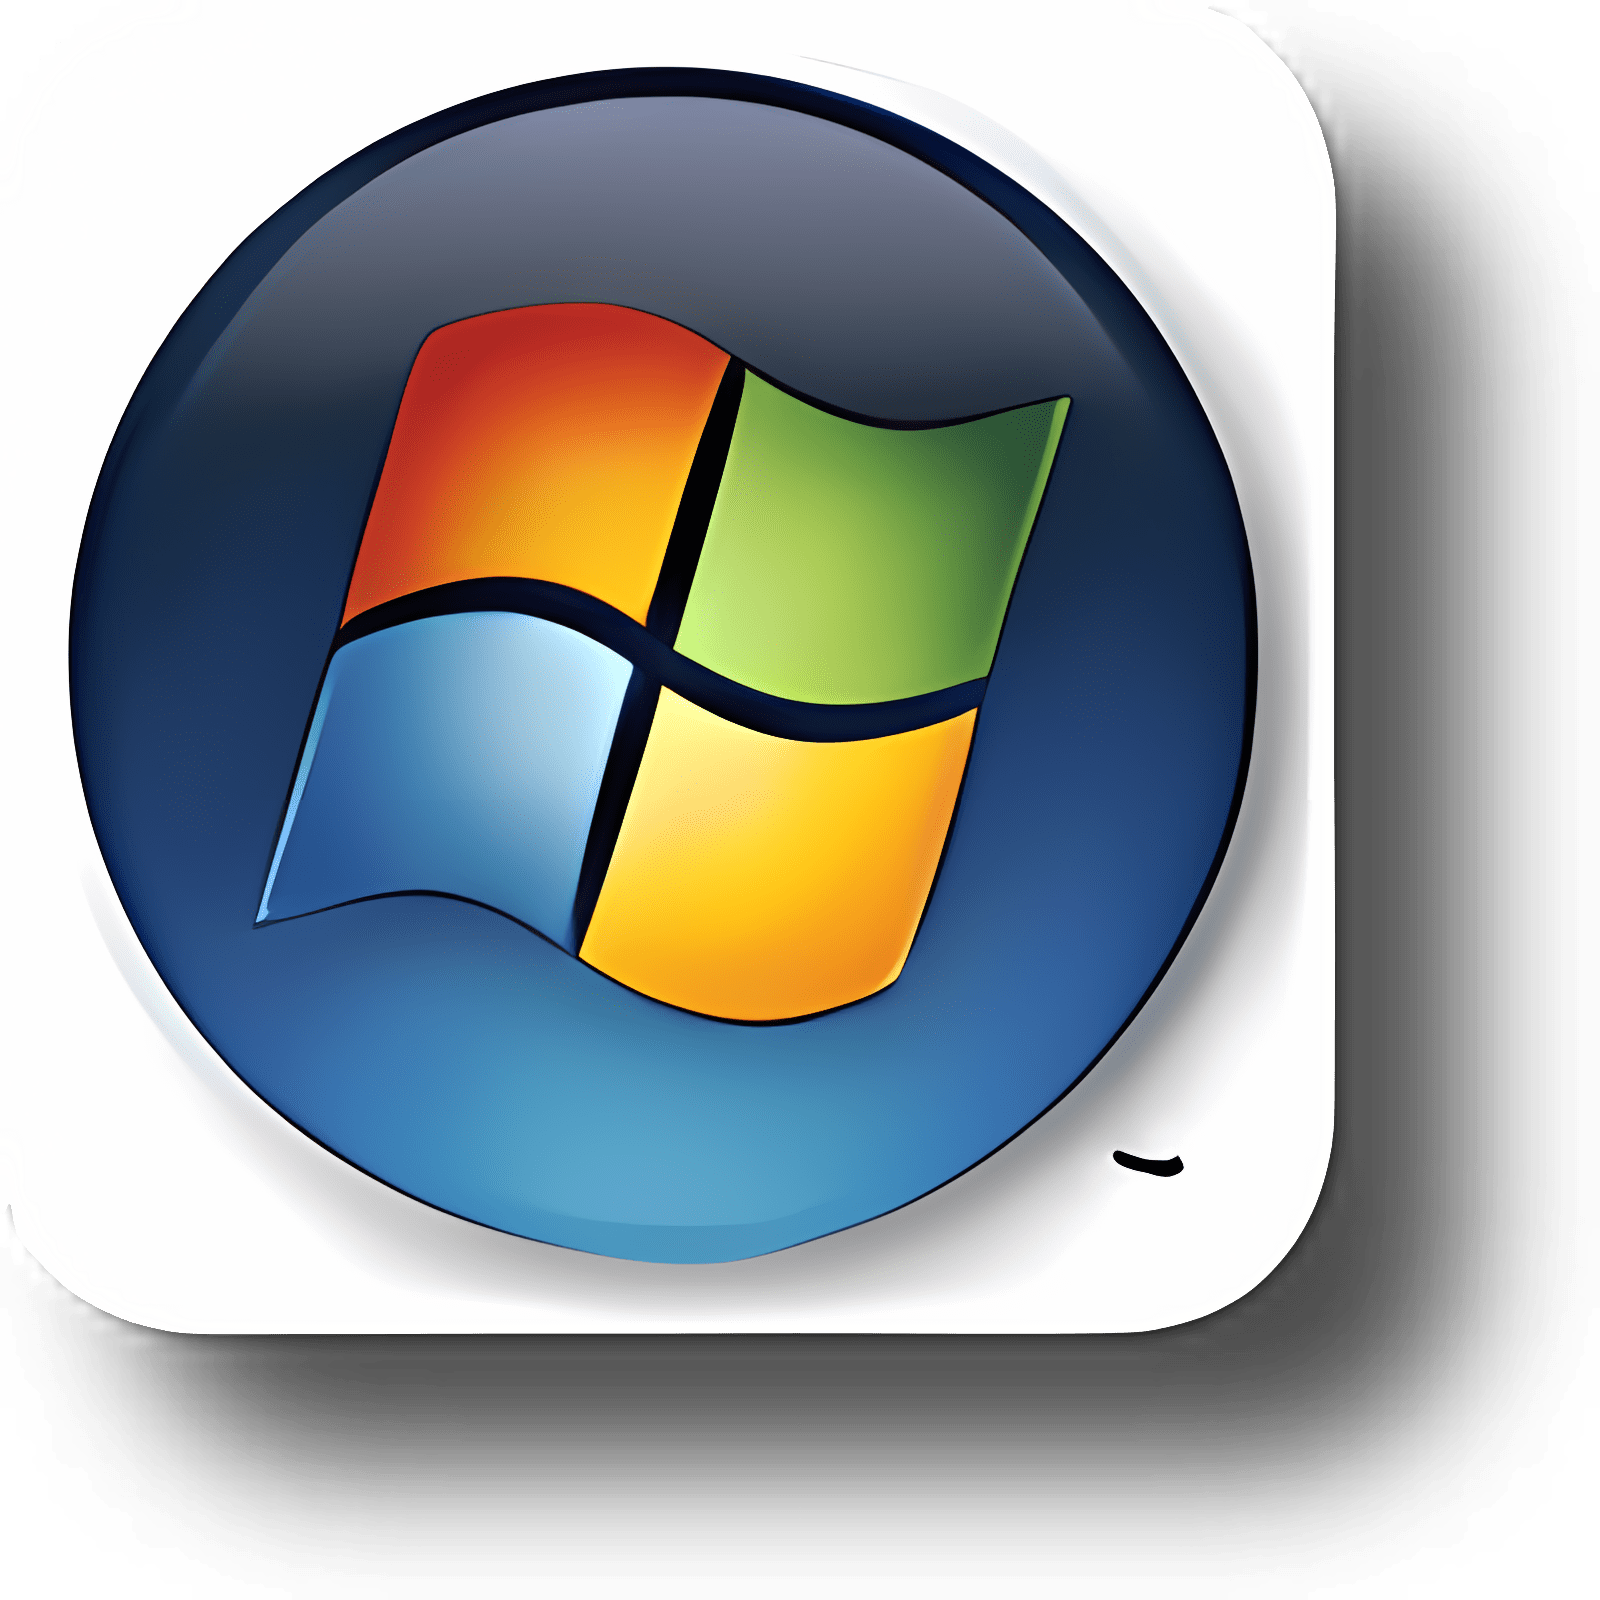 Herunterladen Windows 7 Start Orb Changer Installieren Sie Neueste App Downloader